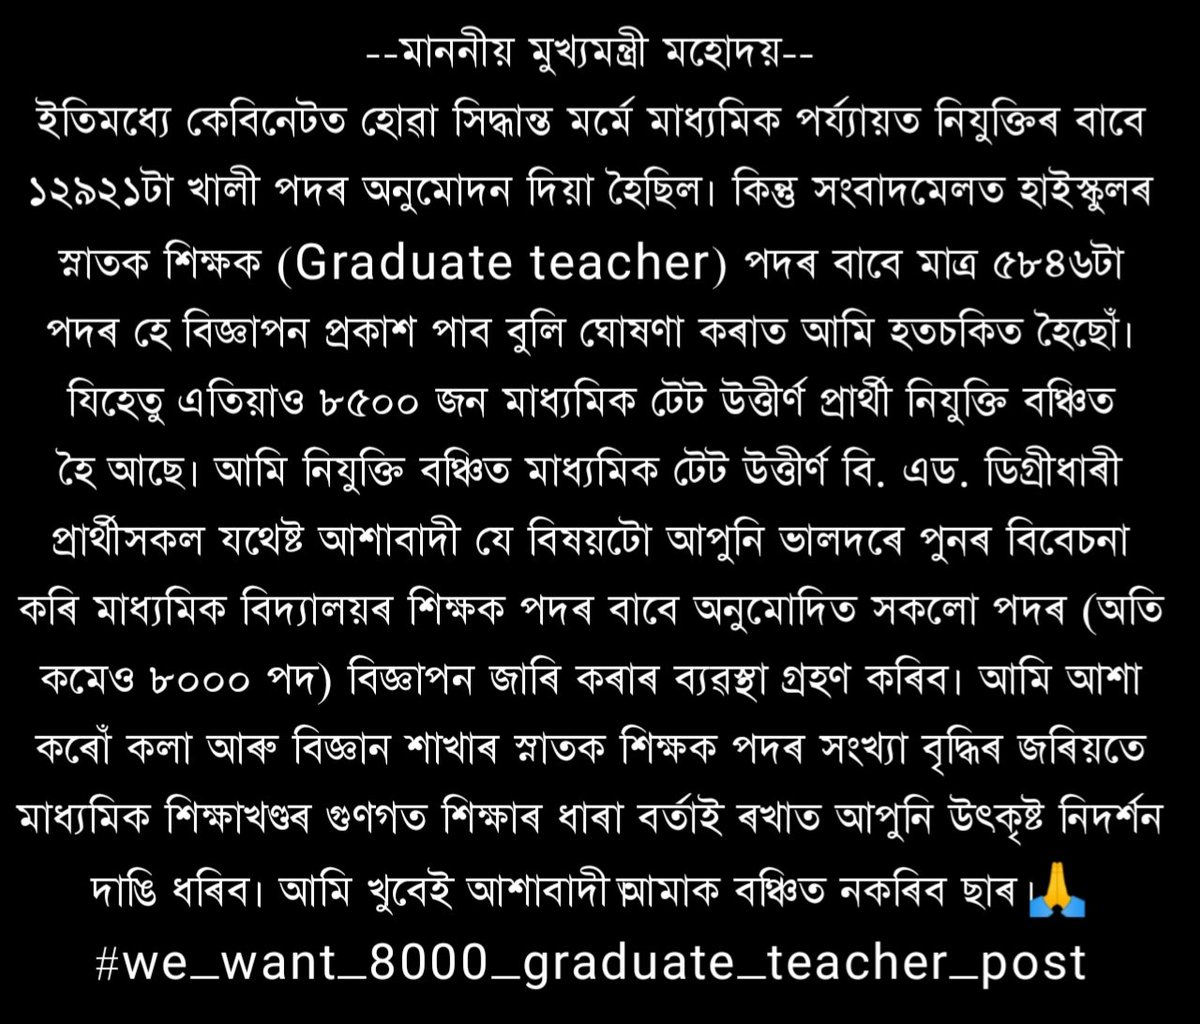 @PonkeyBora @himantabiswa @ranojpeguassam # We want 8000 graduate teacher post